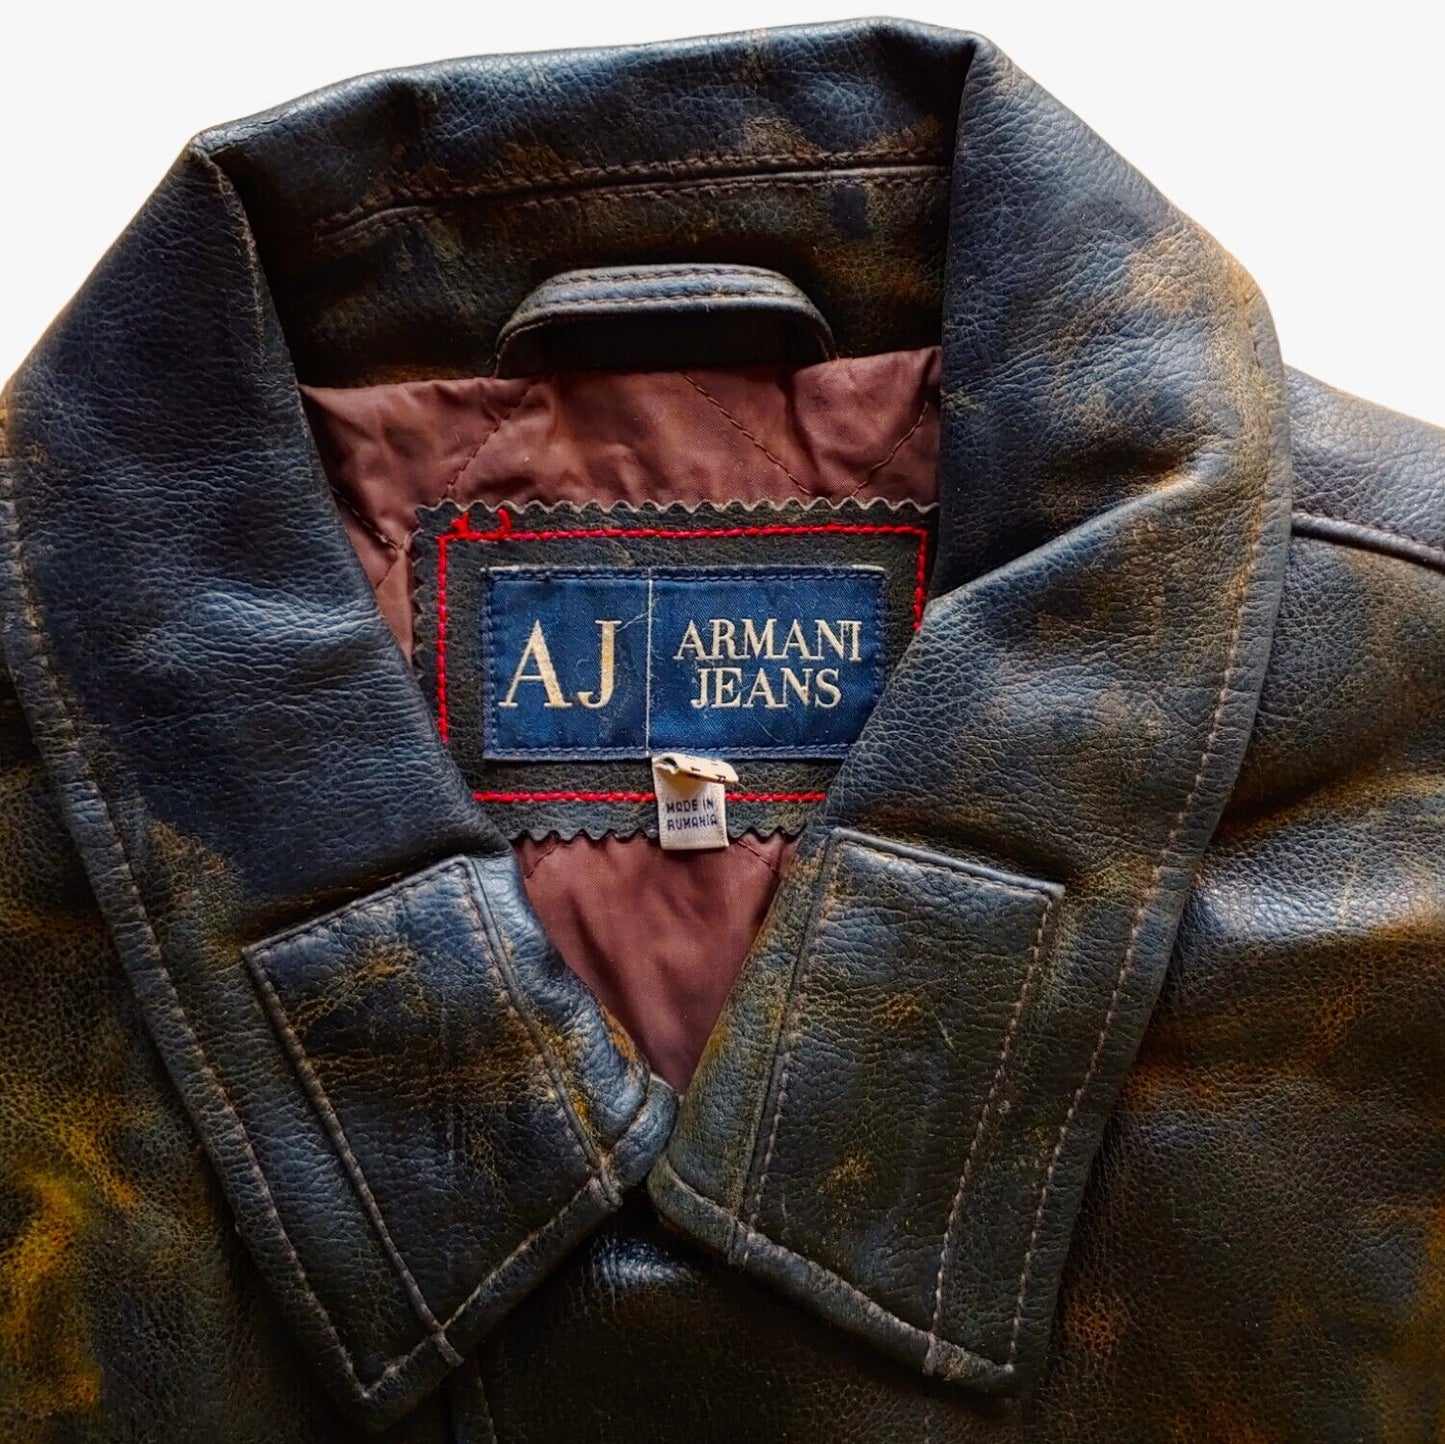 Vintage 90s Armani Jeans Black Leather Utility Jacket Label - Casspios Dream